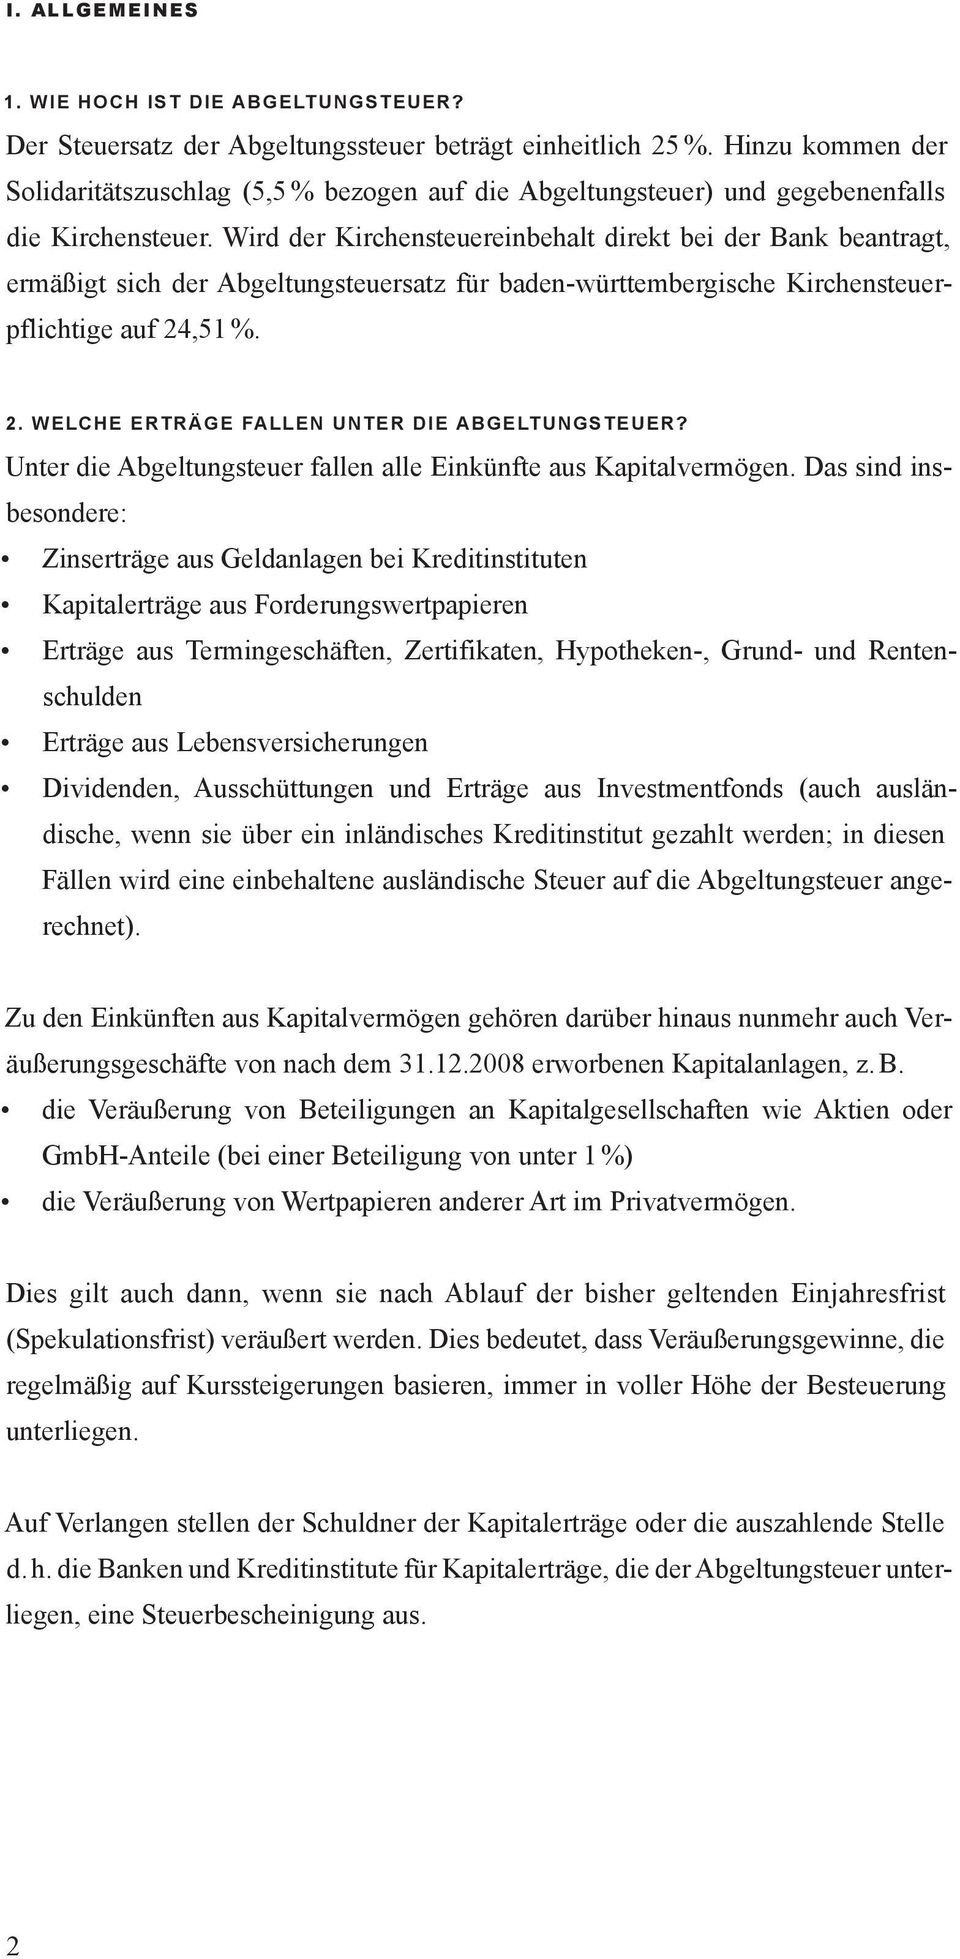 Wird der Kirchensteuereinbehalt direkt bei der Bank beantragt, ermäßigt sich der Abgeltungsteuersatz für baden-württembergische Kirchensteuerpflichtige auf 24